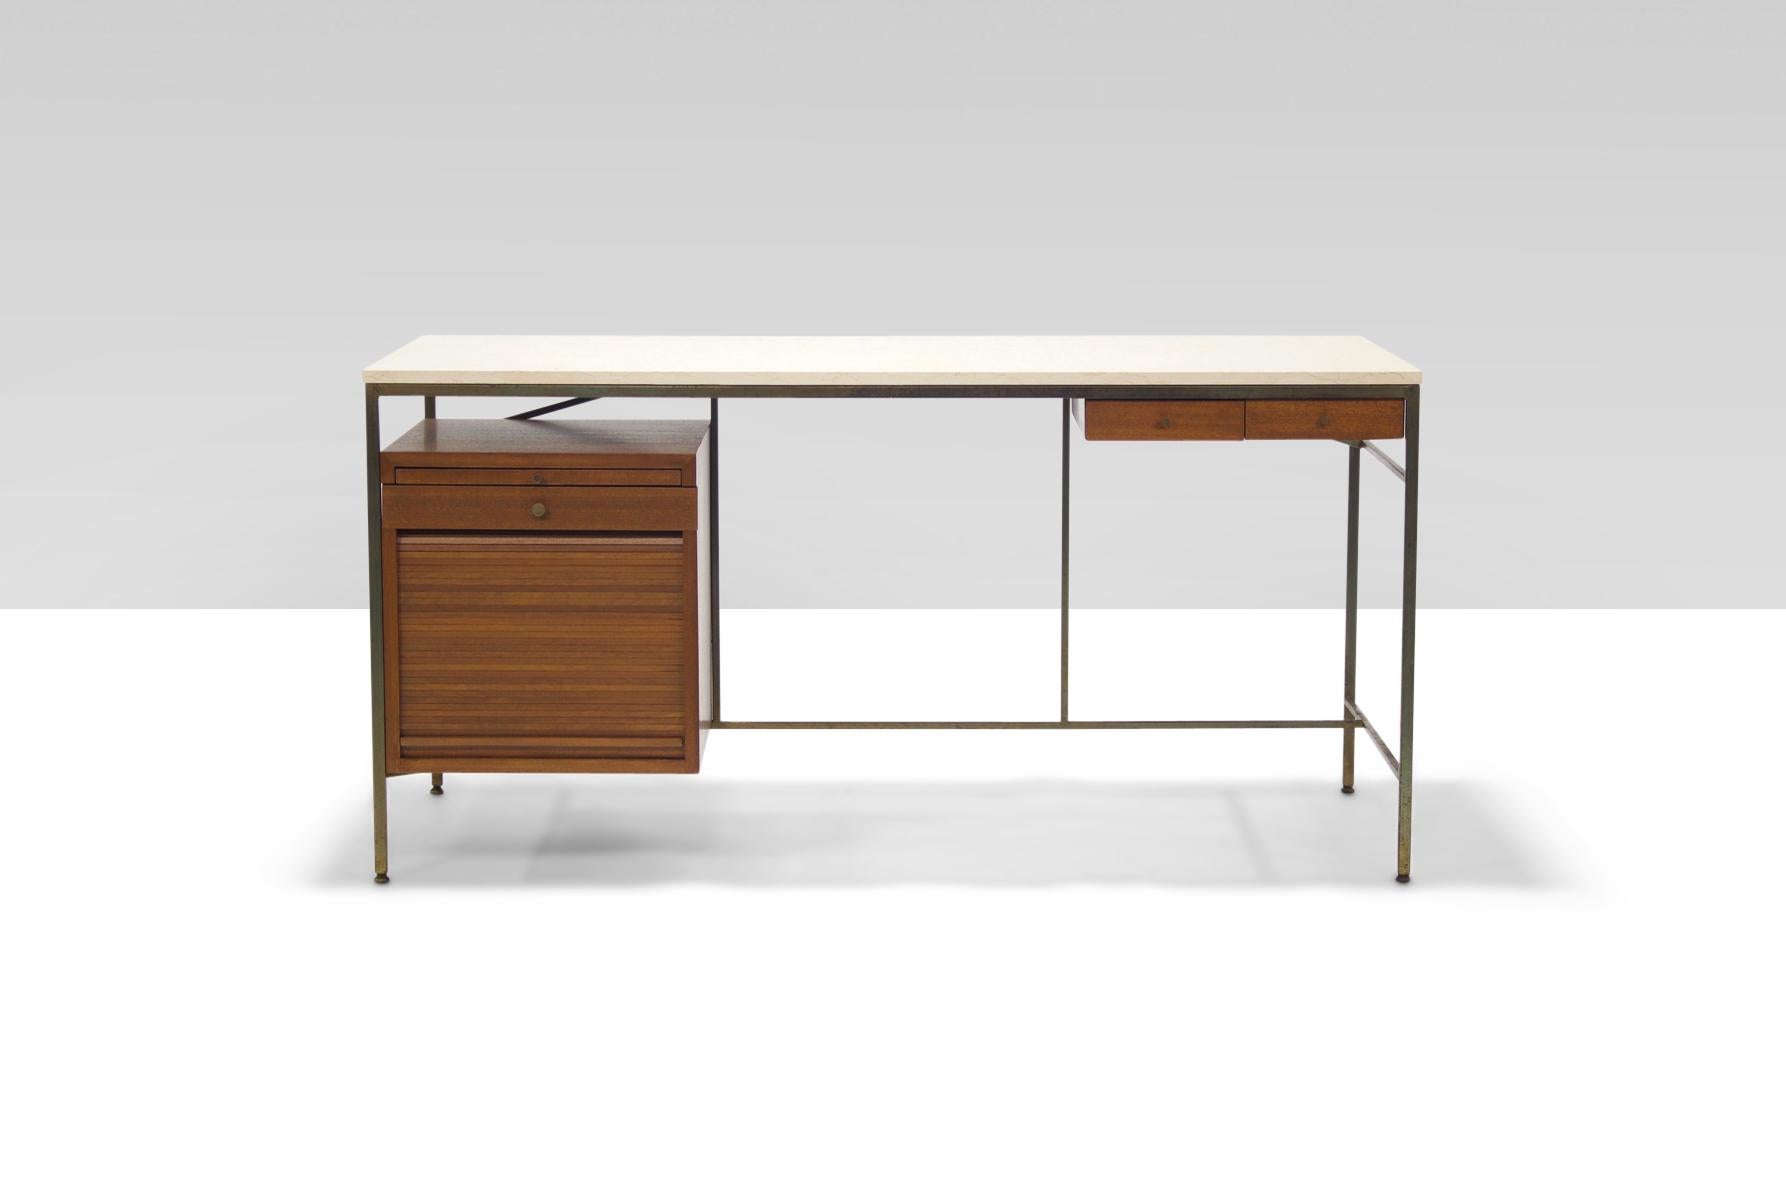 Seltener architektonischer Schreibtisch aus Nussbaum und Stein, entworfen von Paul Mccobb für Calvin Furniture in den frühen 1950er Jahren.

Der linke Sockel verfügt über eine ausziehbare Arbeitsfläche, eine kleine Schublade und eine Rolltür, die